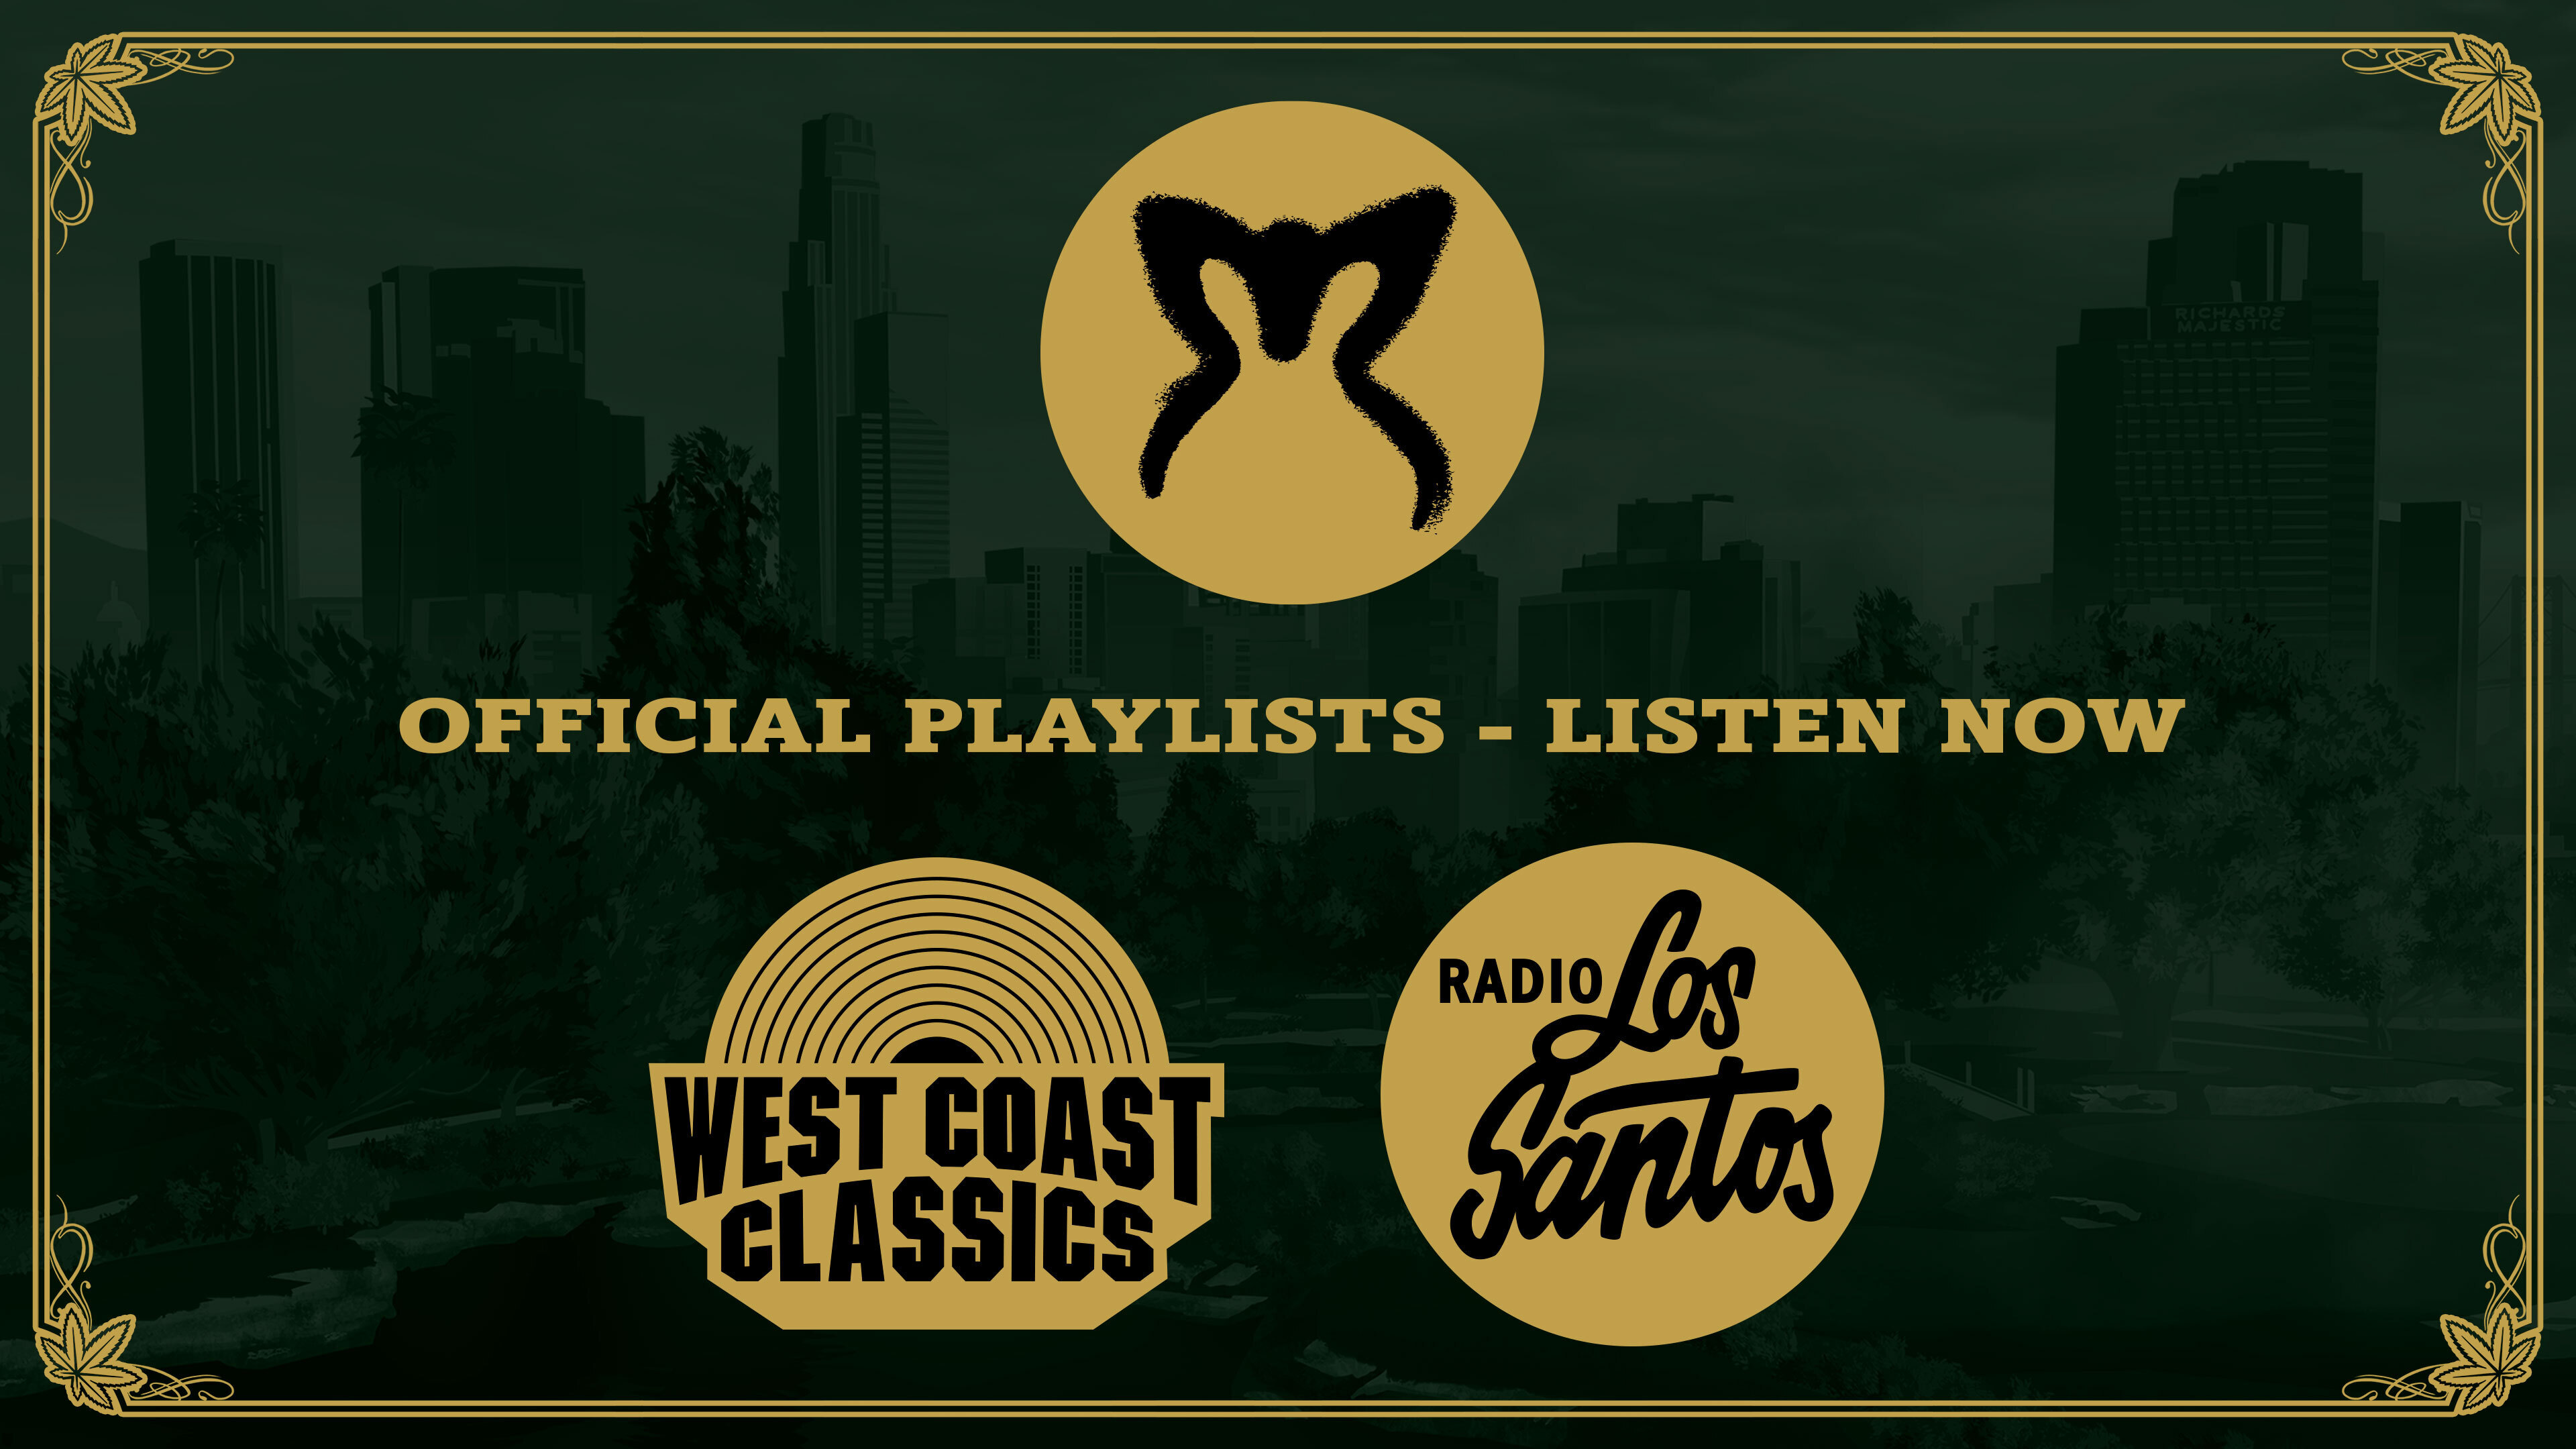 Download Los Santos Rock Radio for GTA 5